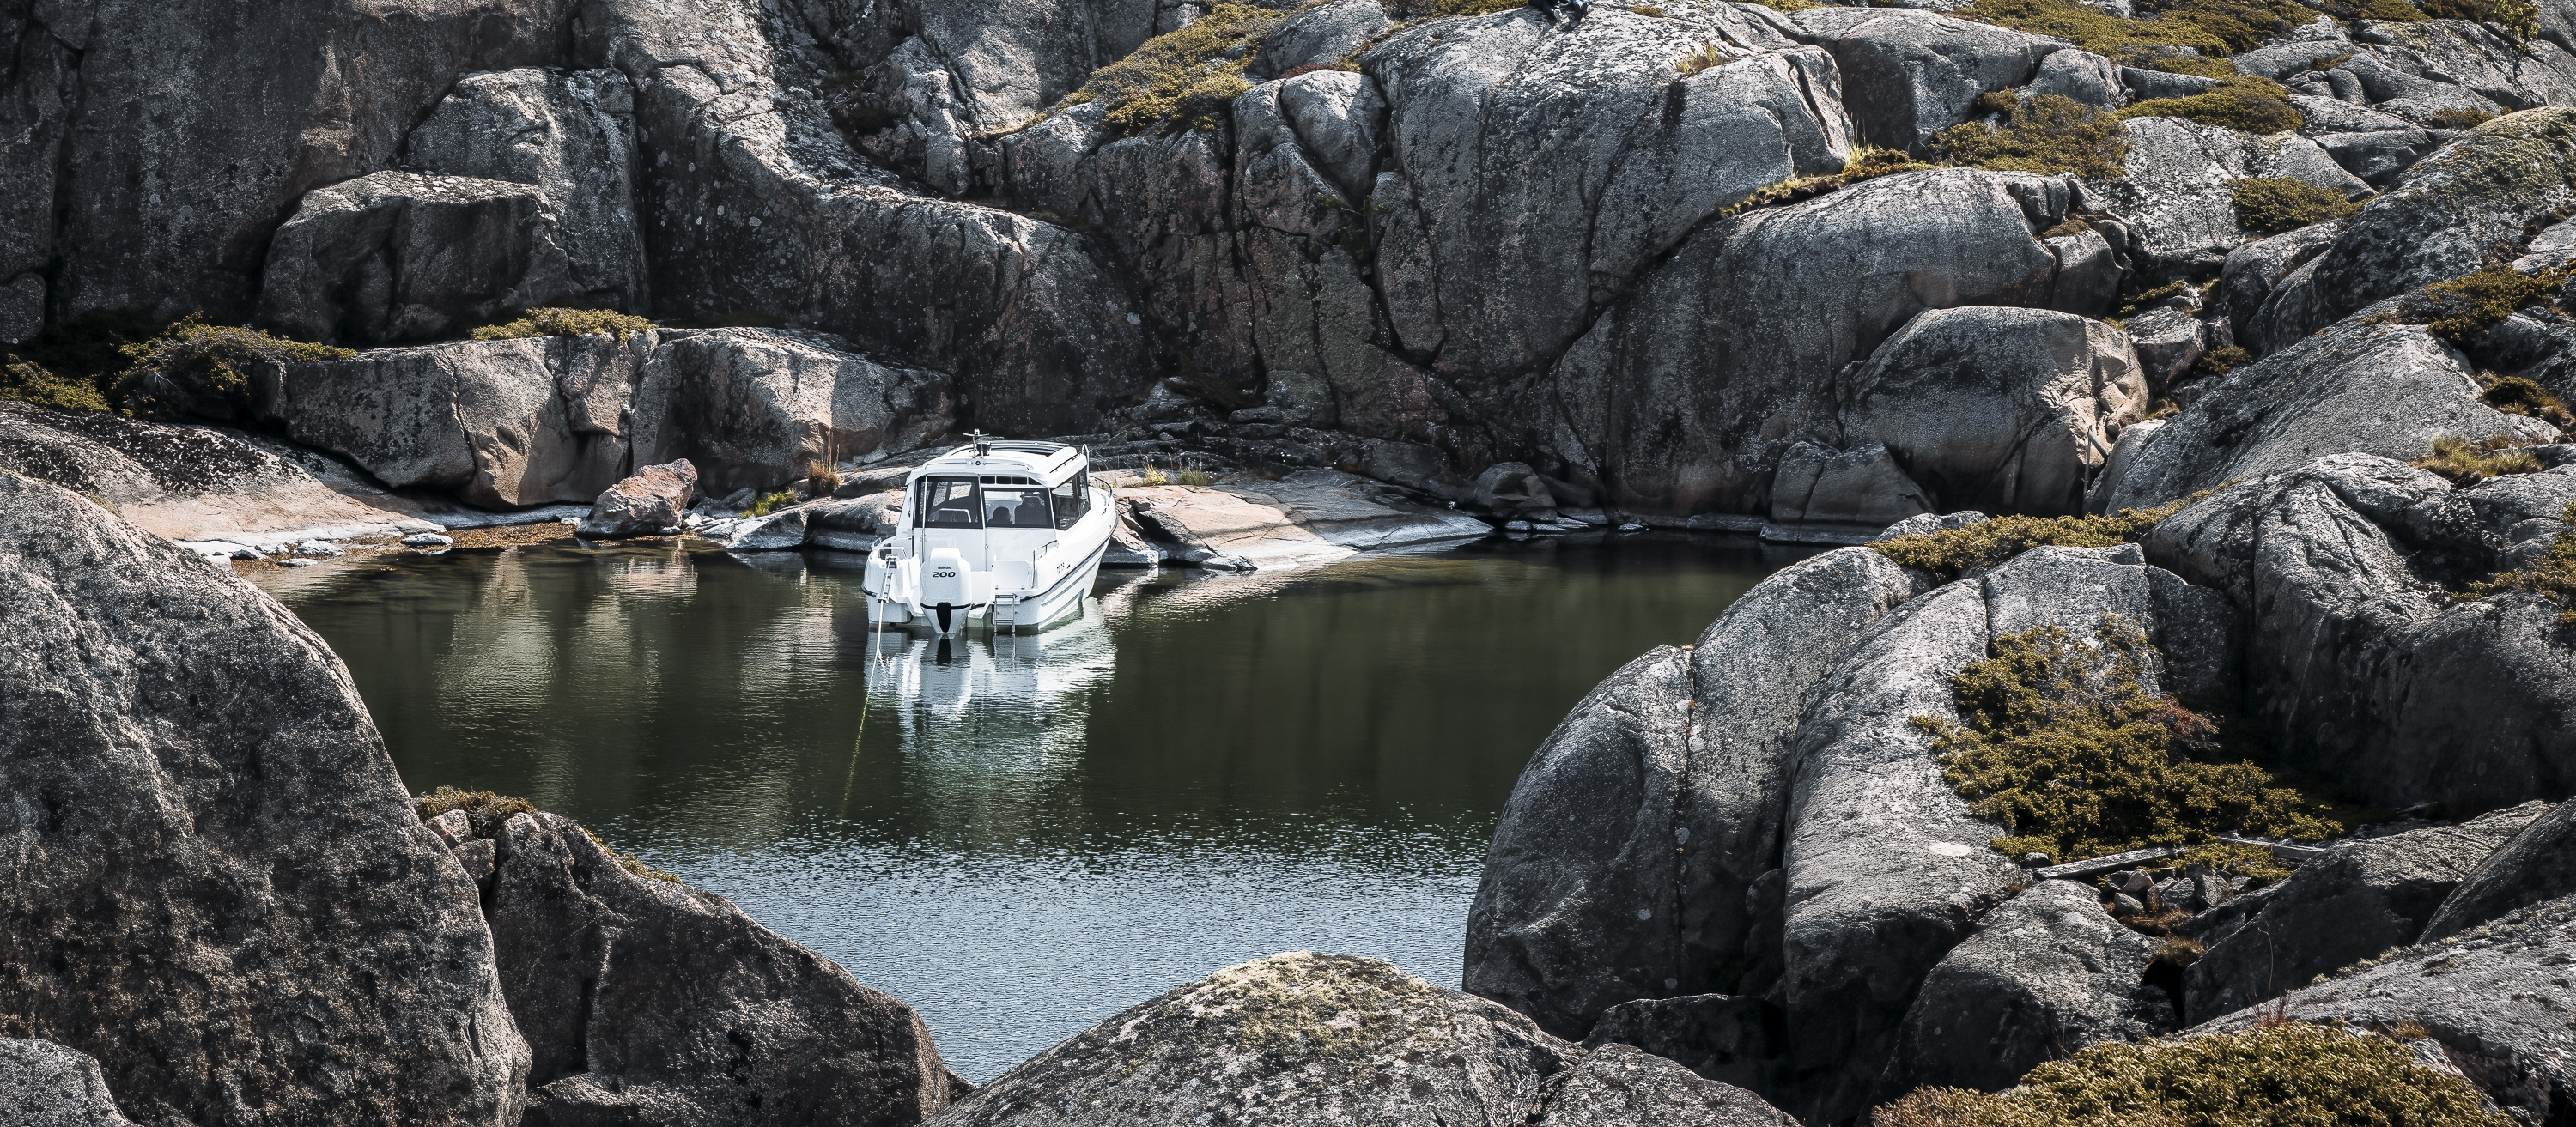 TG 7.9 hyttbåt står för ankare i yttre skärgården, omgiven av ståtliga klippor.